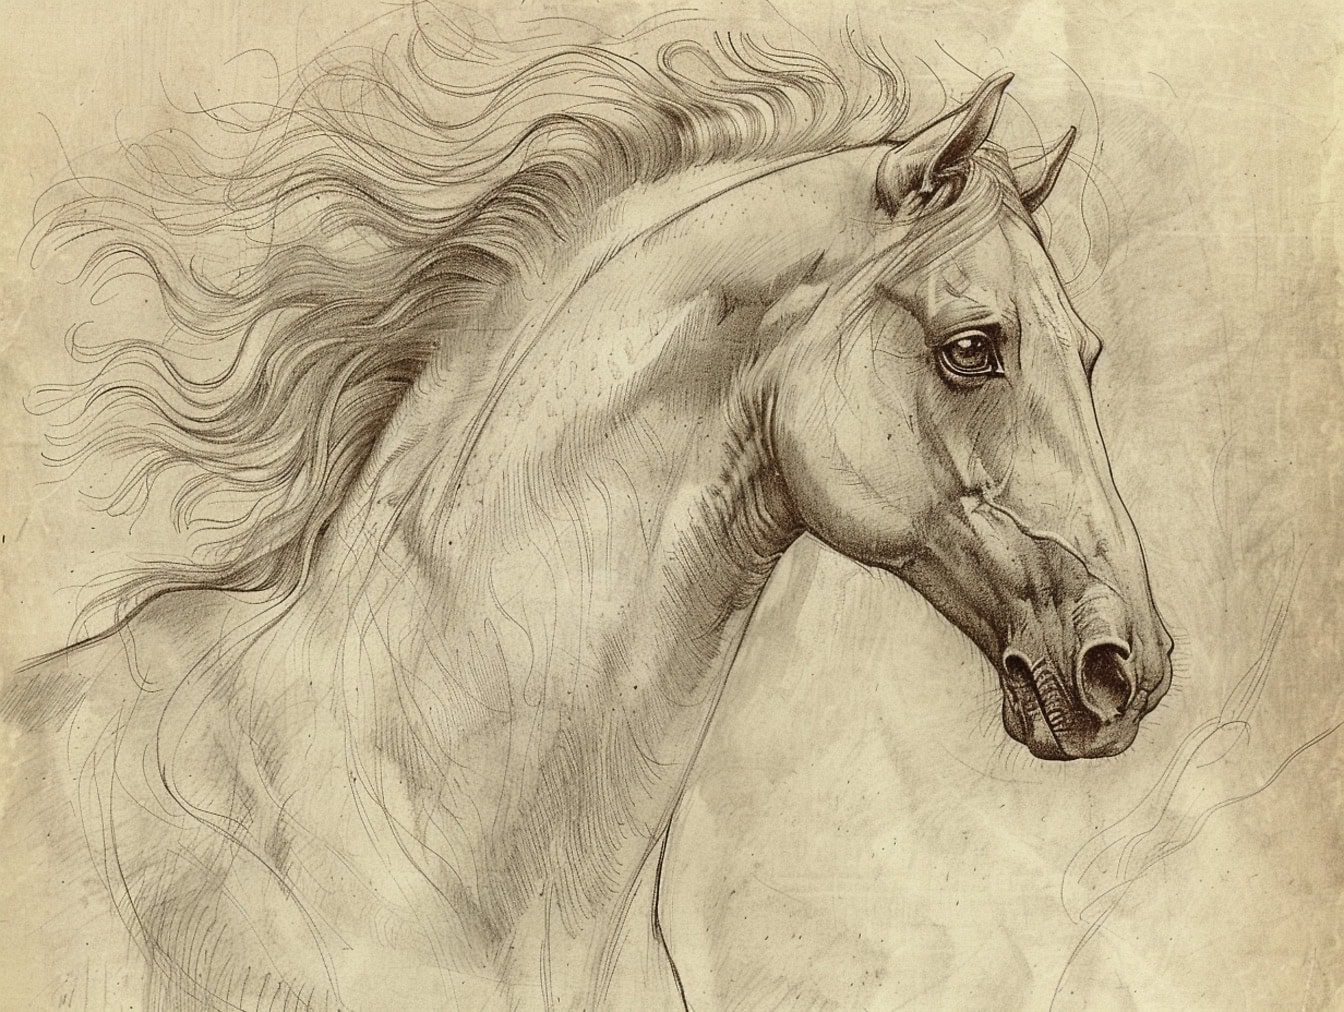 Sketsa kepala kuda di atas kertas tua kekuningan dengan fokus pada mata kuda jantan yang lembut